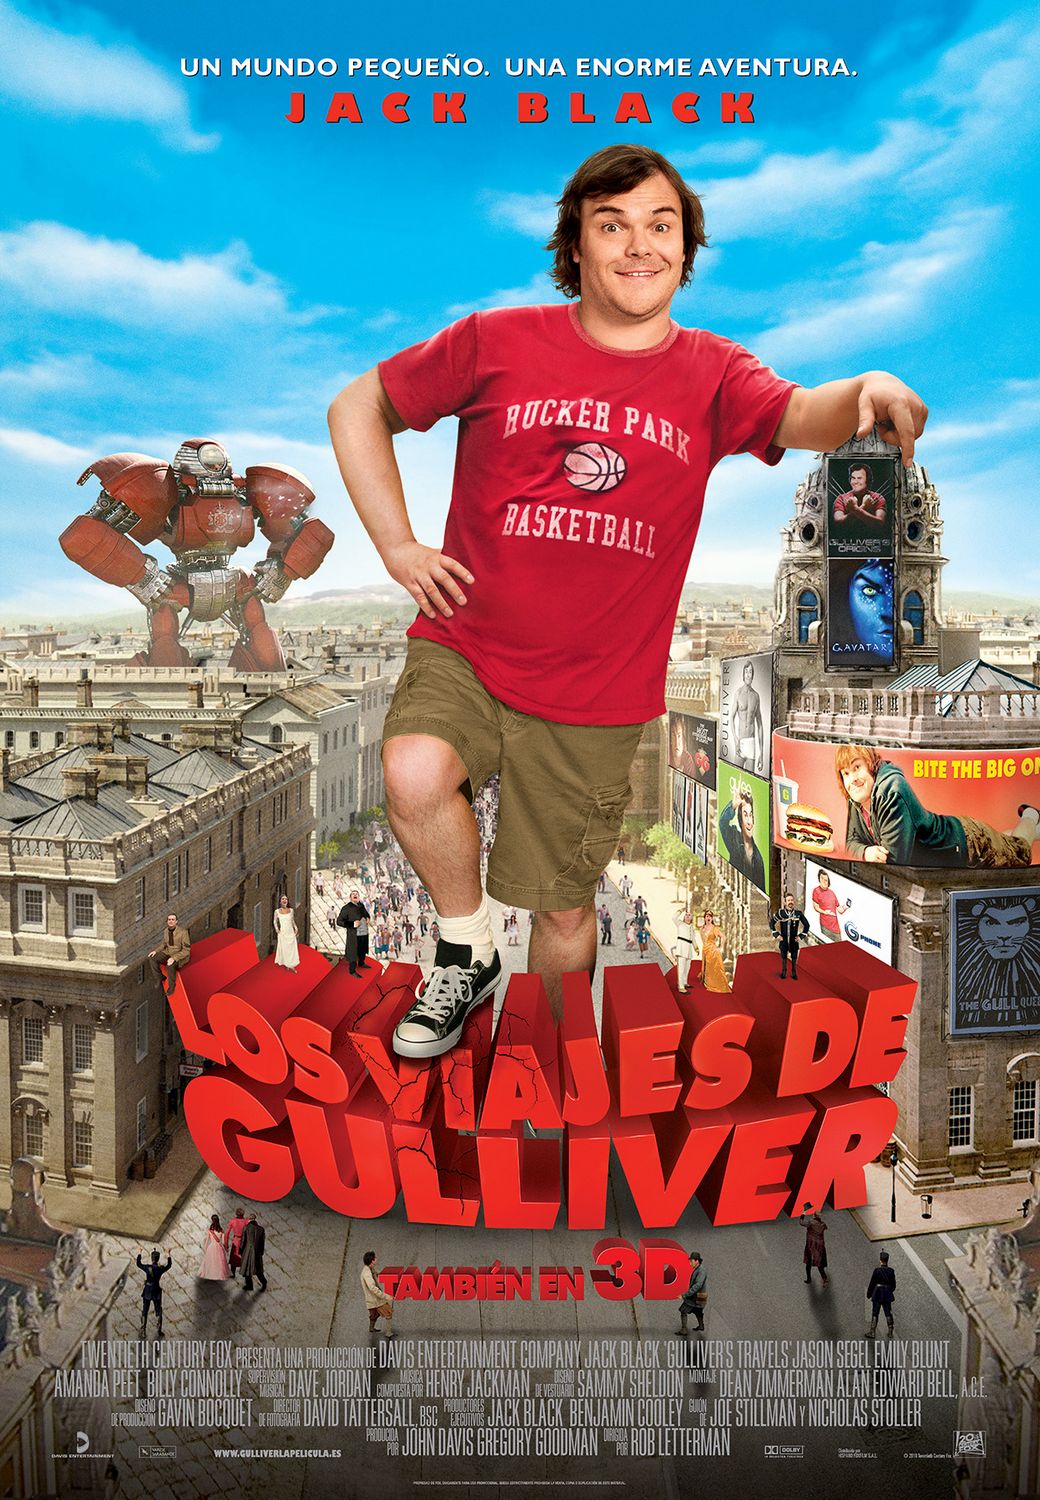 New Gulliver’s Travels poster tanks online.